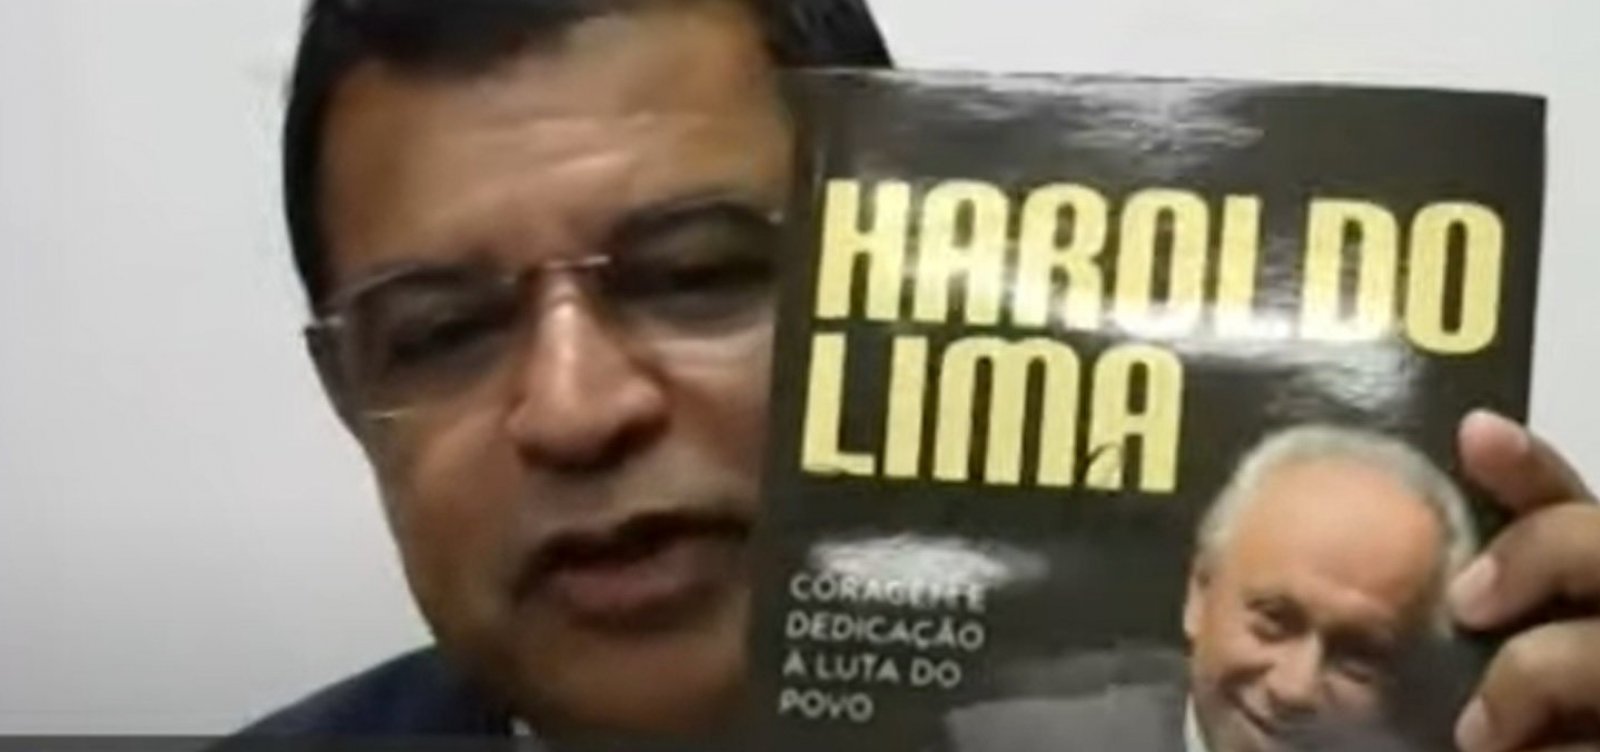 Presidente do PCdoB fala sobre biografia que conta vida e obra de Haroldo Lima